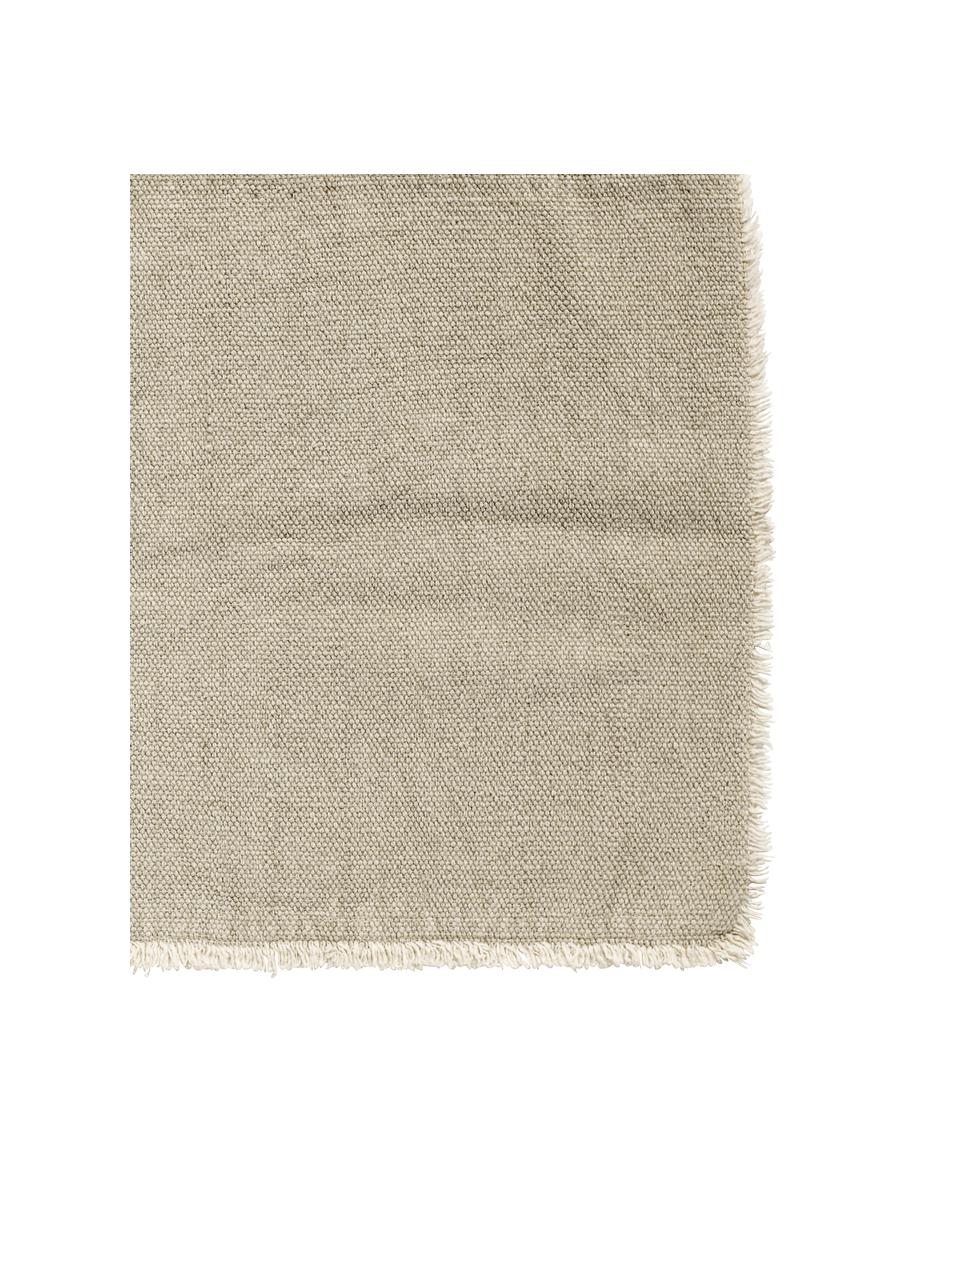 Manteles individuales de algoón Edge, 6 uds., Mezcla de algodón con StoneWash (lavado a piedra), Greige, An 35 x L 48 cm